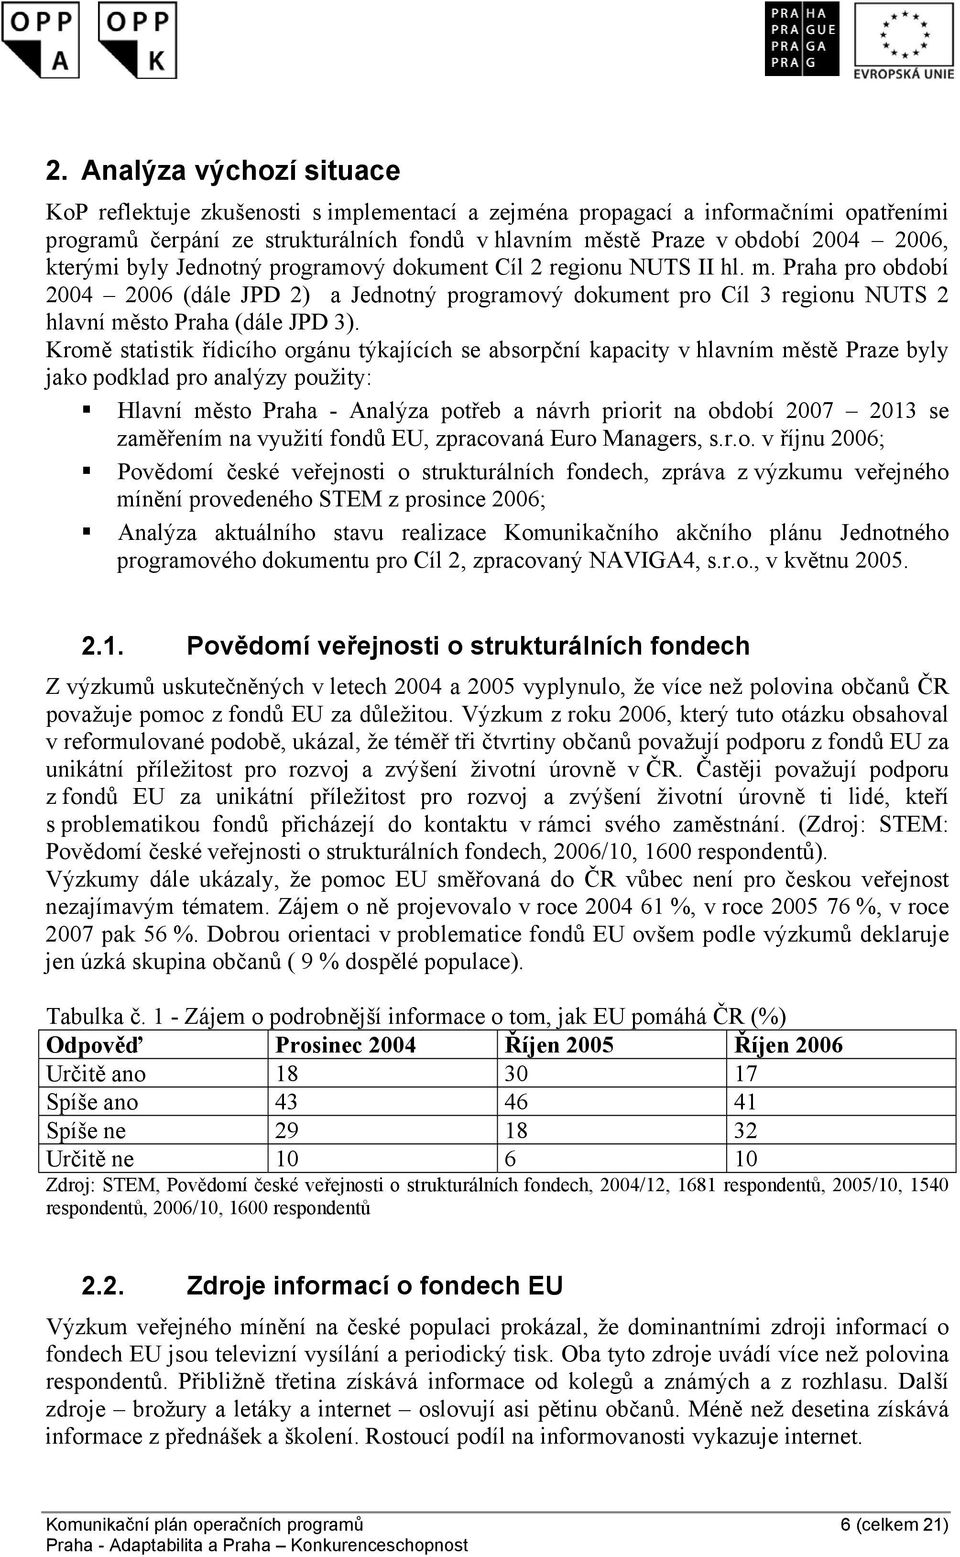 Kromě statistik řídicího orgánu týkajících se absorpční kapacity v hlavním městě Praze byly jako podklad pro analýzy použity: Hlavní město Praha - Analýza potřeb a návrh priorit na období 2007 2013